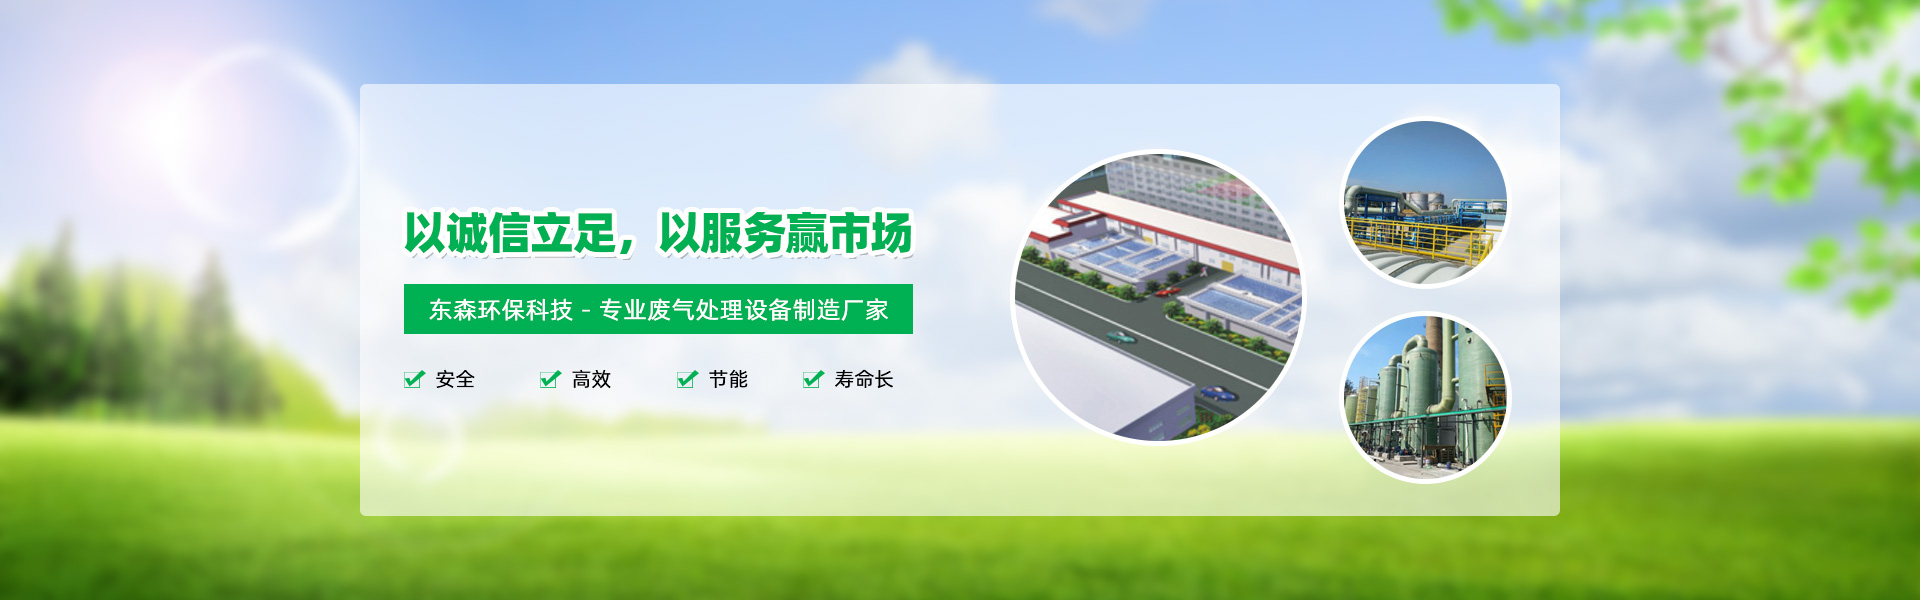 廢氣處理設備制造商(shāng)